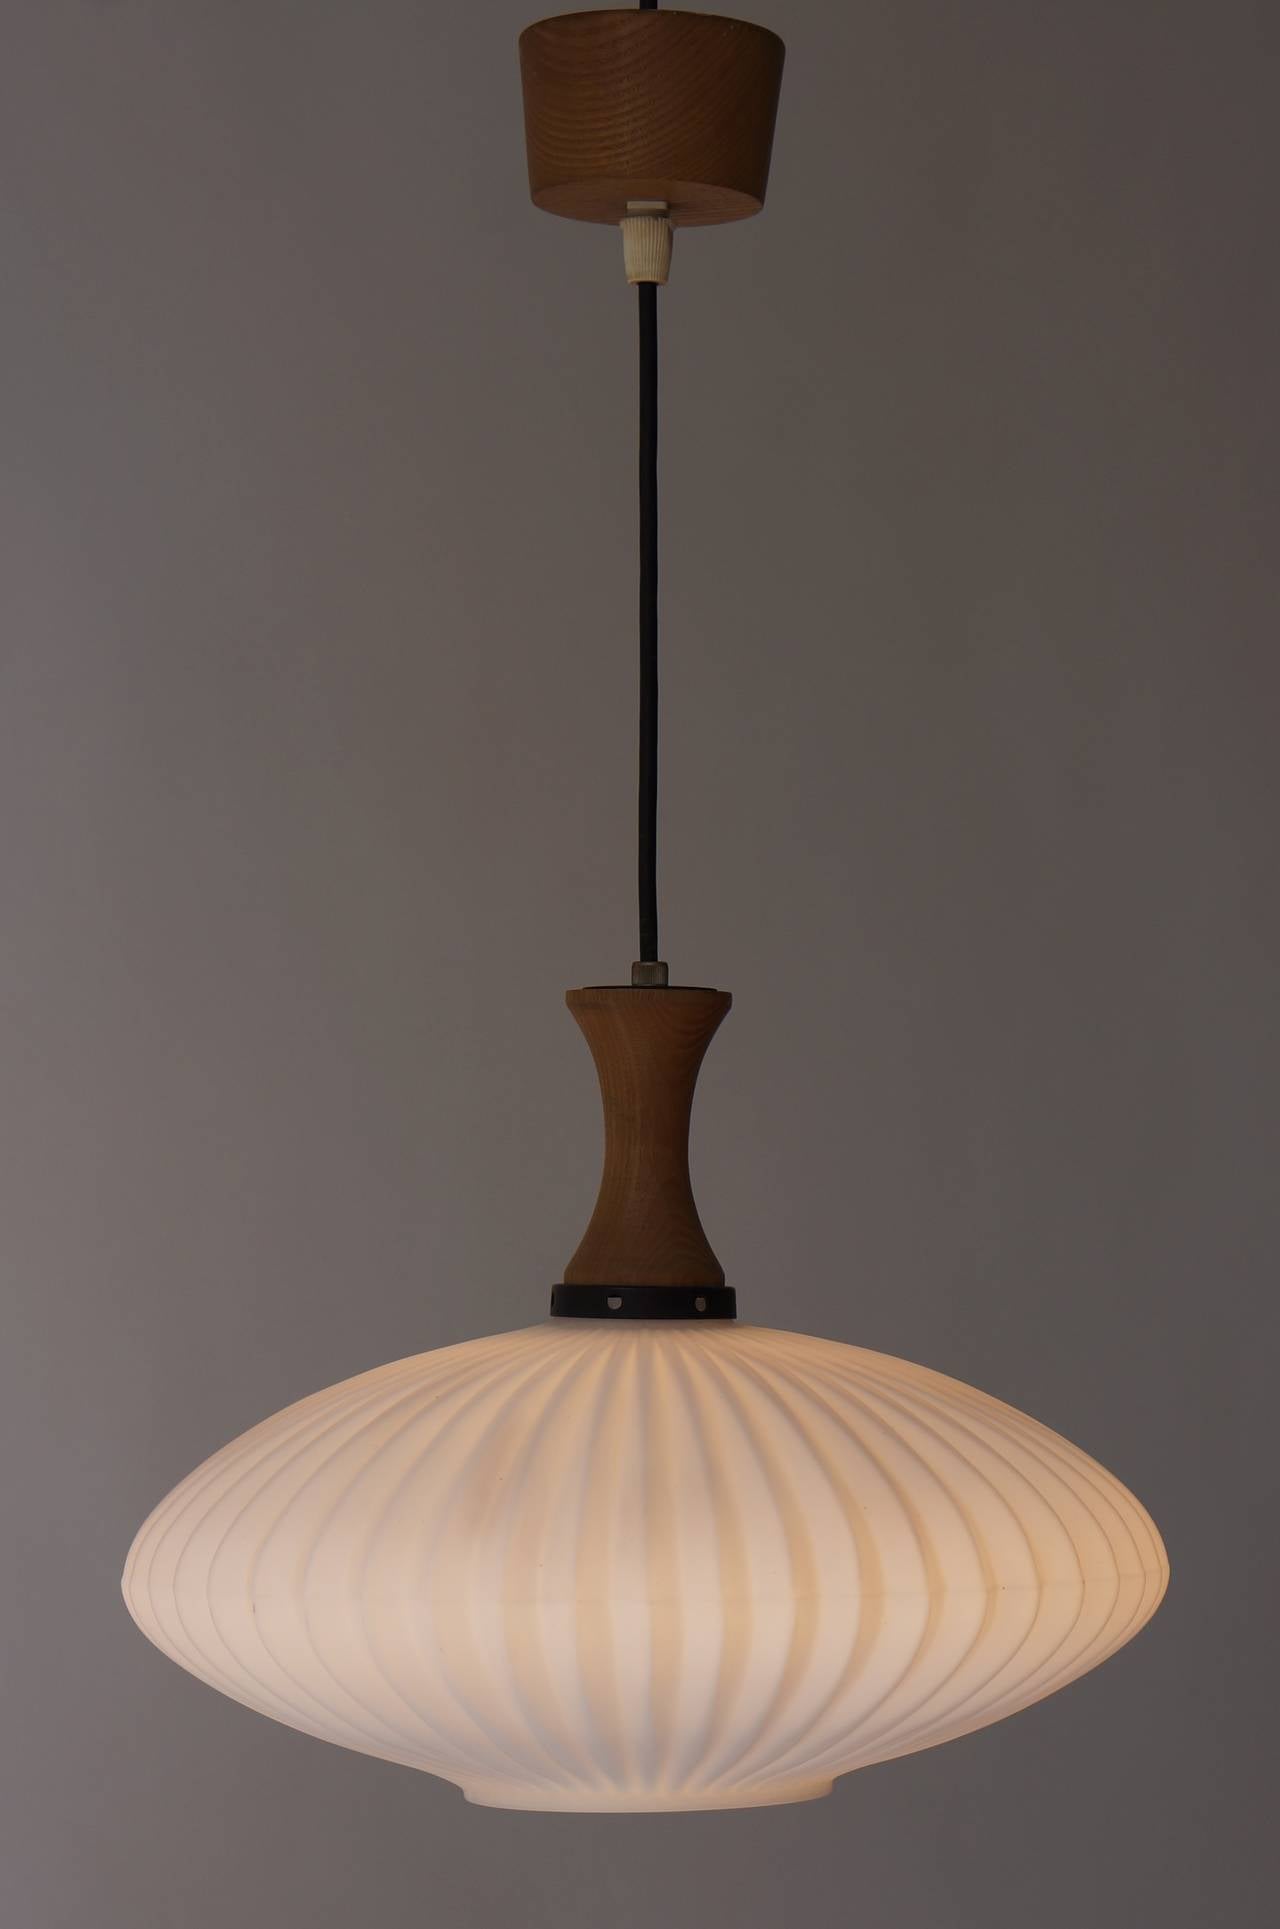 Lampe pendante danoise en verre et bois du milieu du siècle dernier.
Mesures : Diamètre 35 cm.
Hauteur 15 cm.